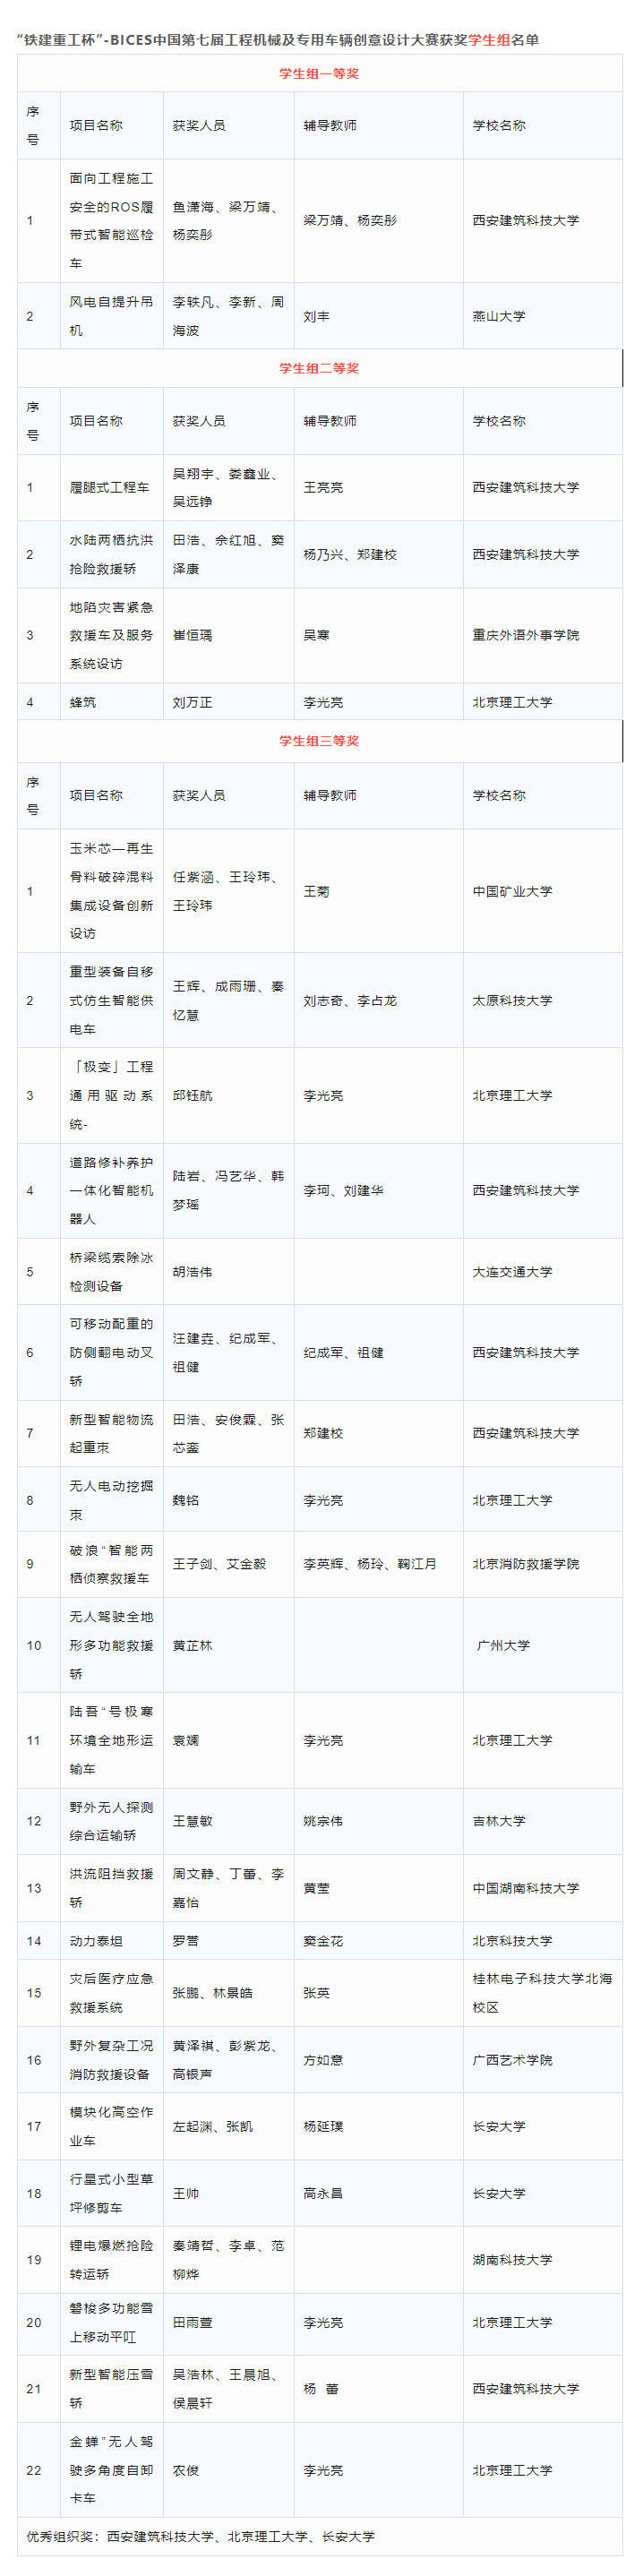 “铁建重工杯”-BICES中国第七届工程机械及专用车辆创意妄想大赛获奖学生组名单